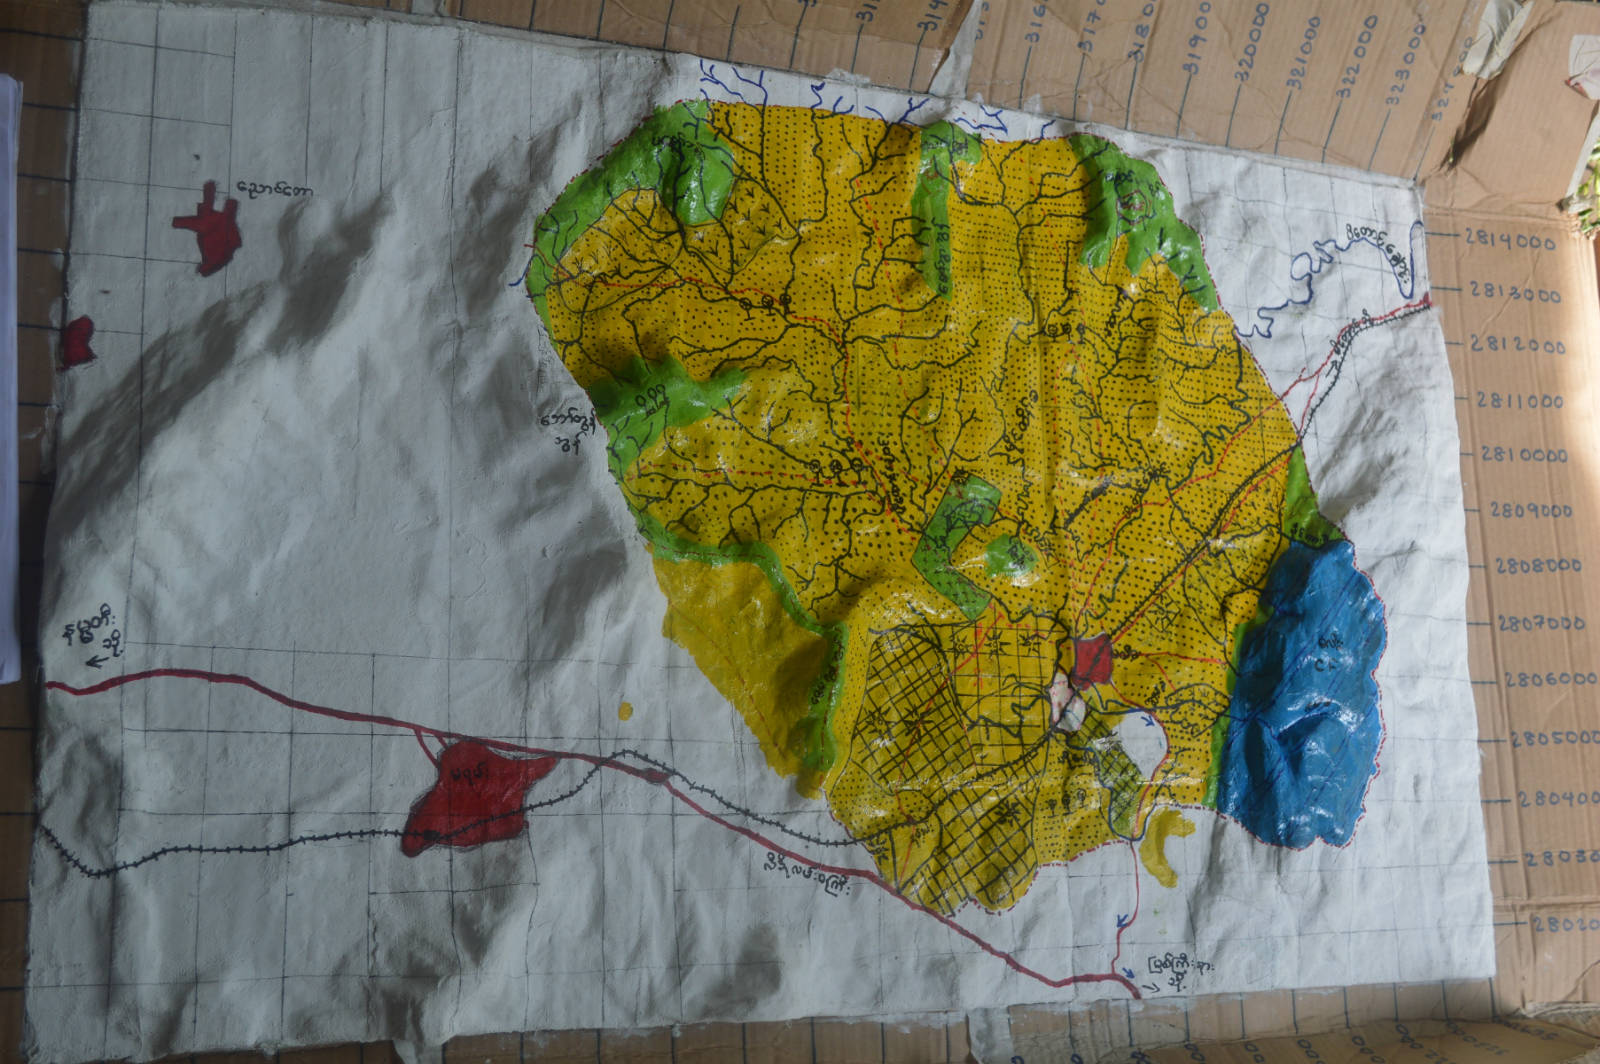 克欽邦的森林用戶小組利用自製的地勢模型，更好地掌握及規劃自己社區的林地使用。